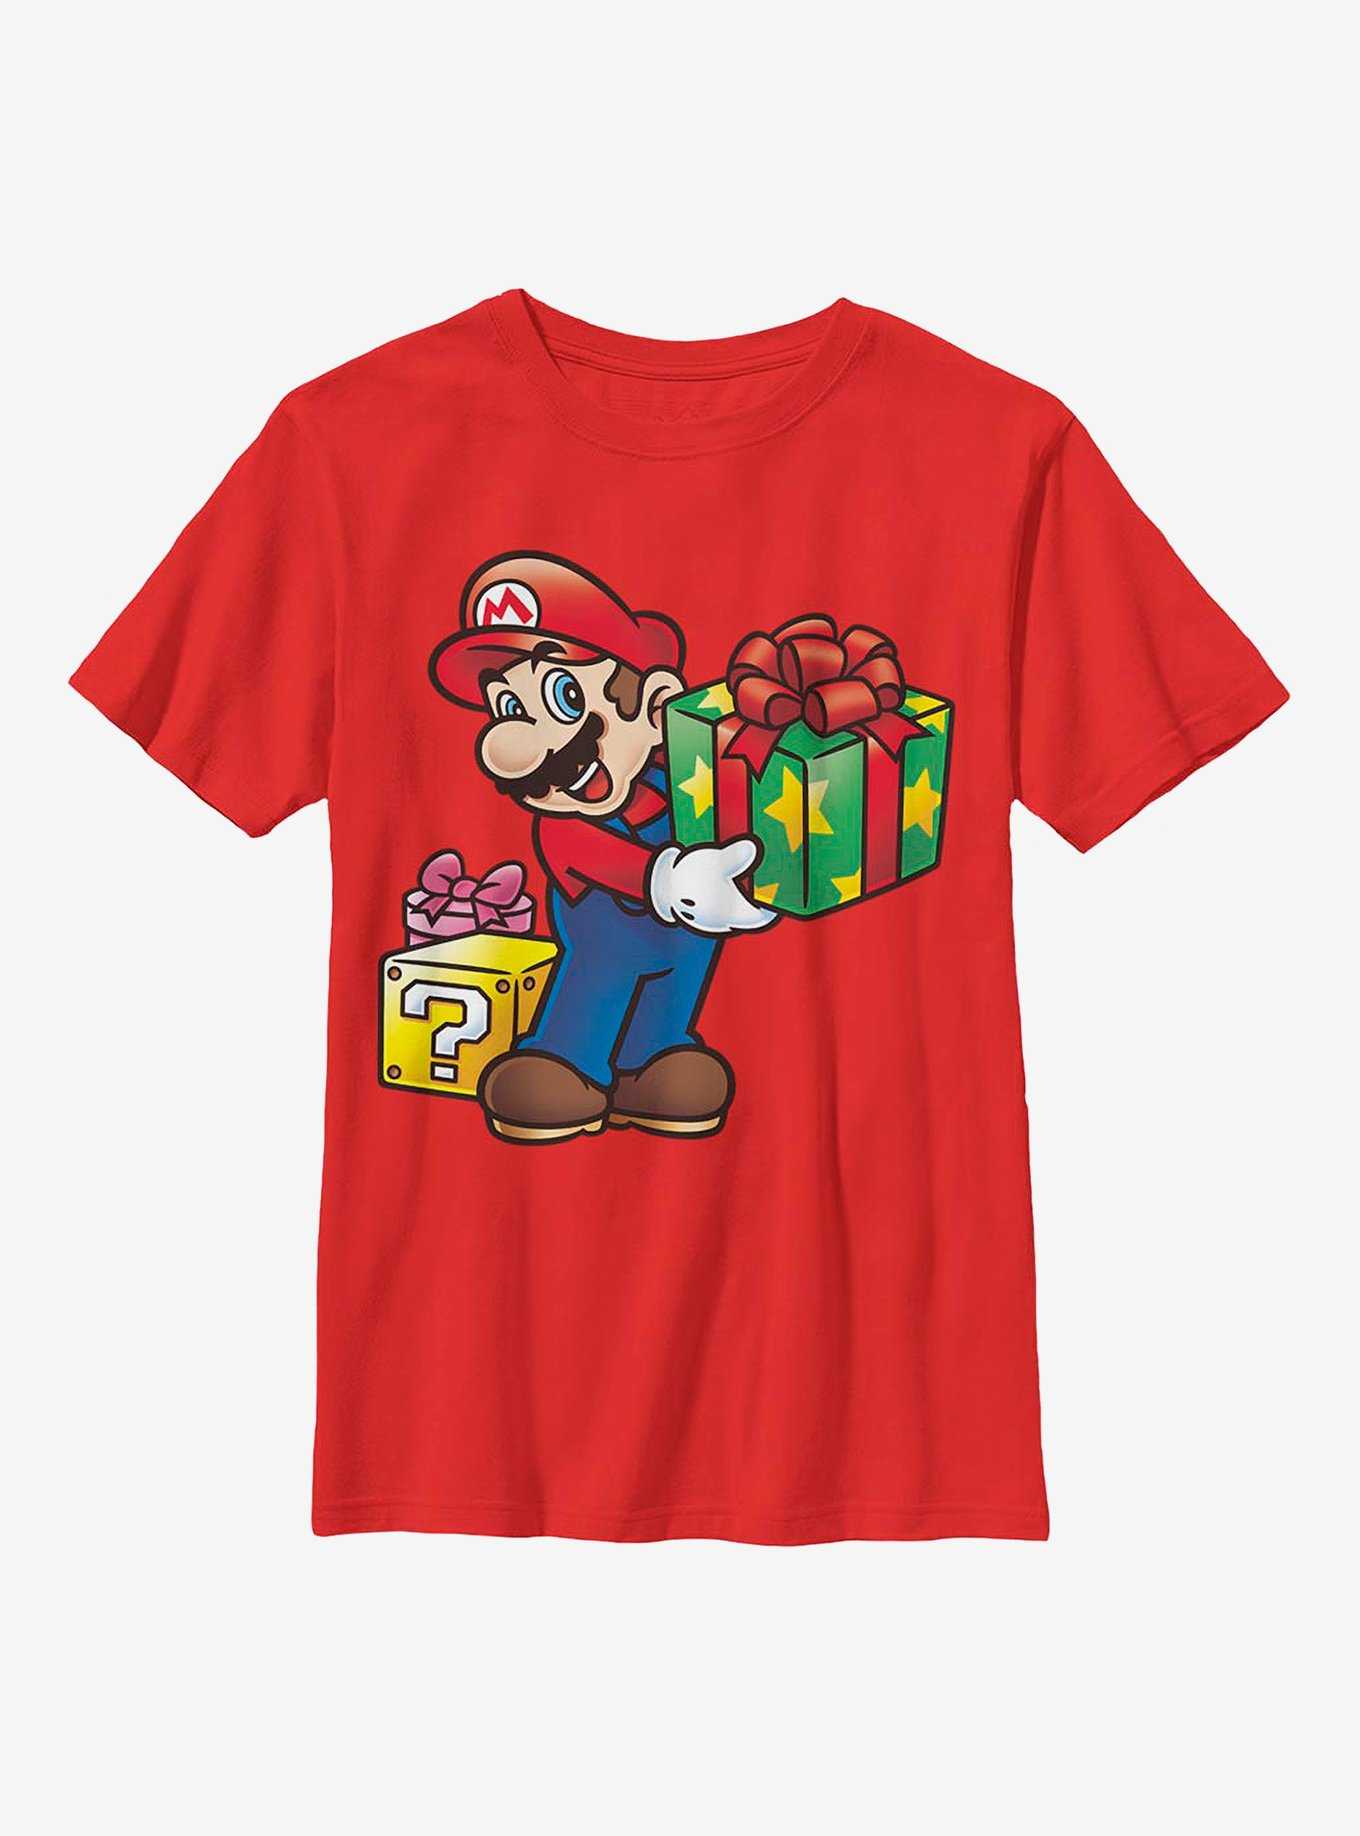 Super Mario Christmas Gifts Youth T-Shirt, , hi-res